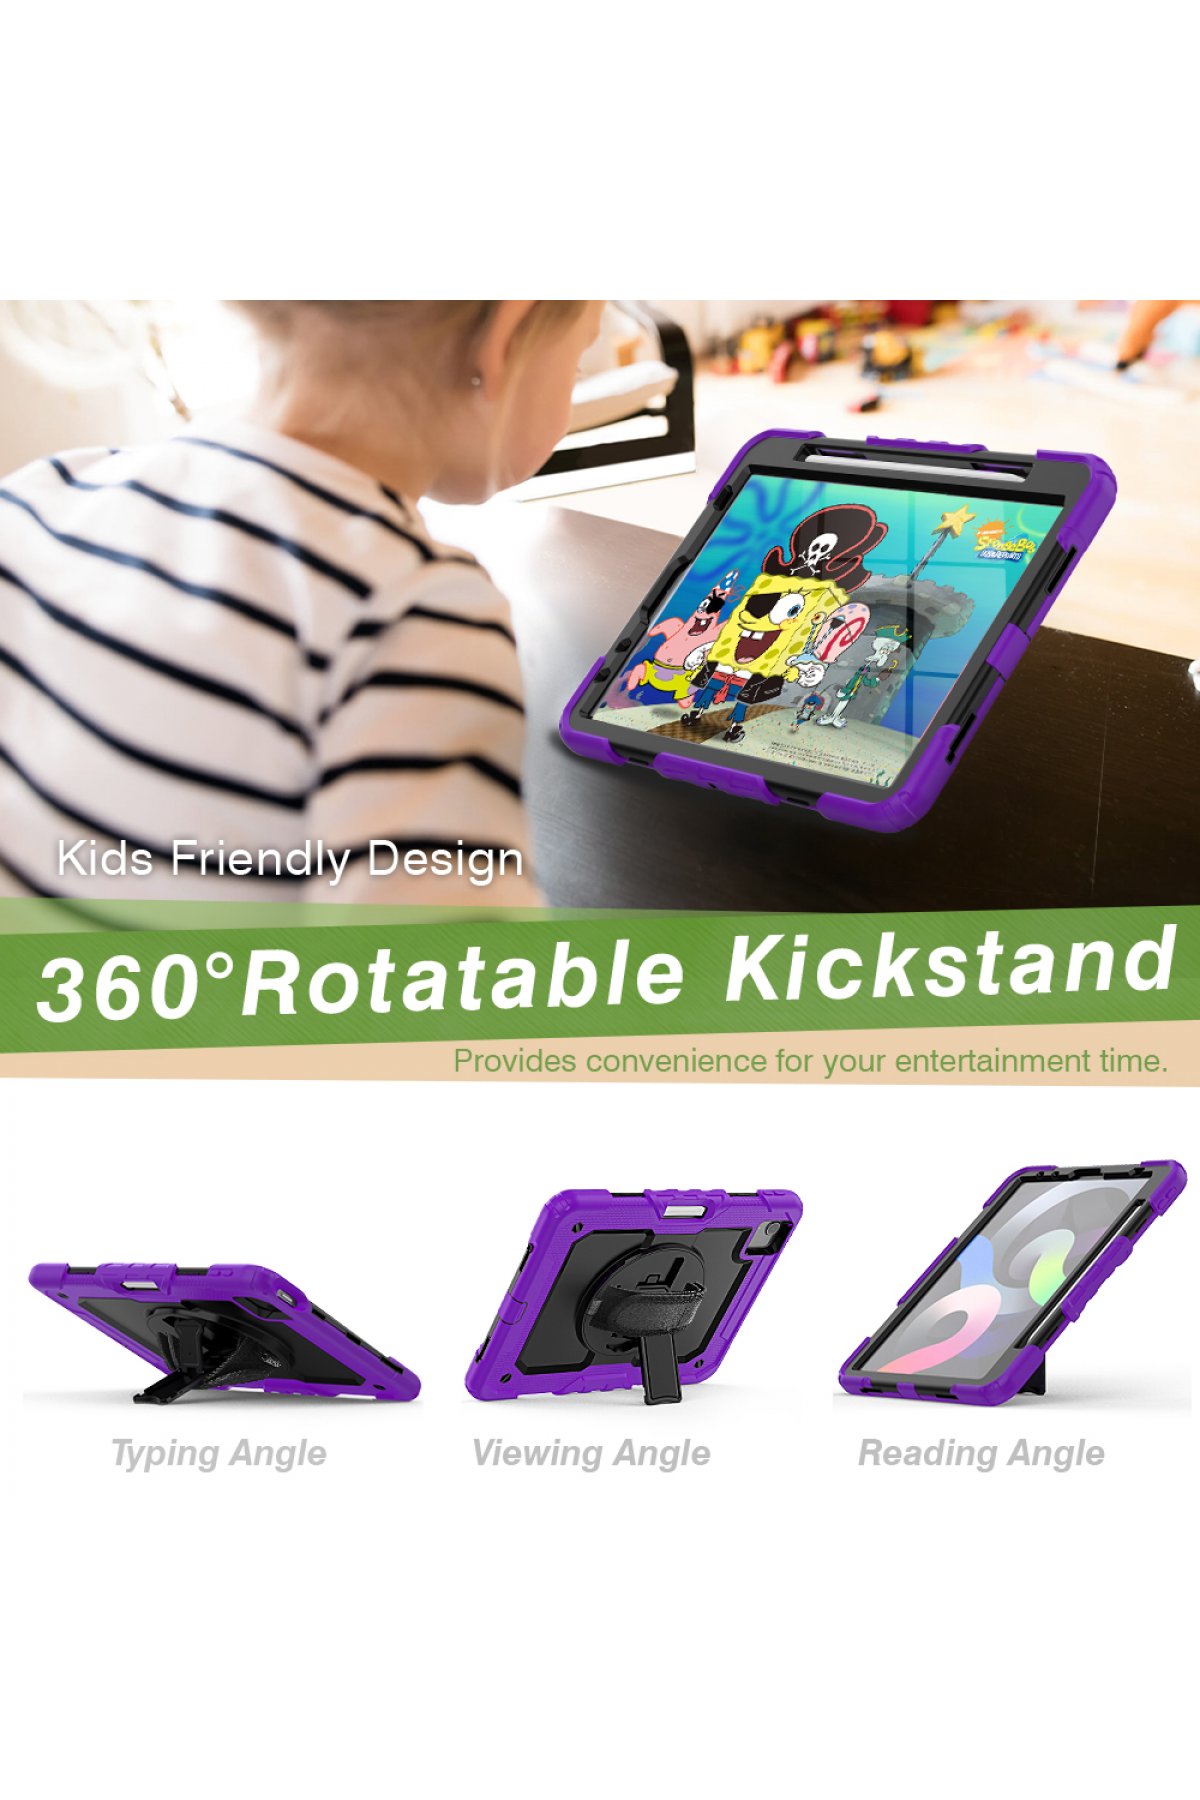 Newface iPad Pro 11 (2018) Kılıf Kalemlikli Hugo Tablet Kılıfı - Koyu Yeşil